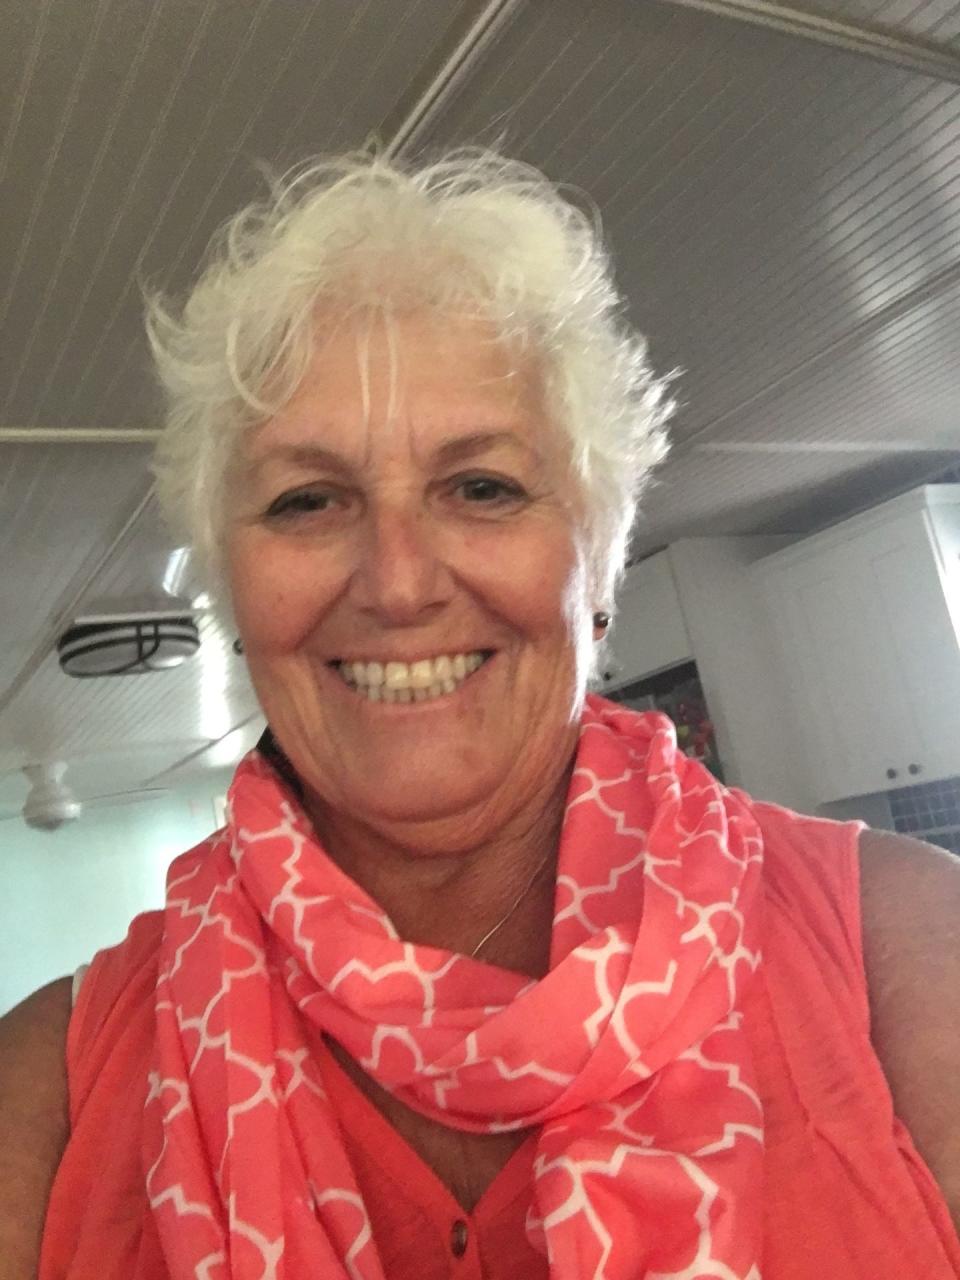 Elaine Van Berschot, Barefoot Bay trustee candidate